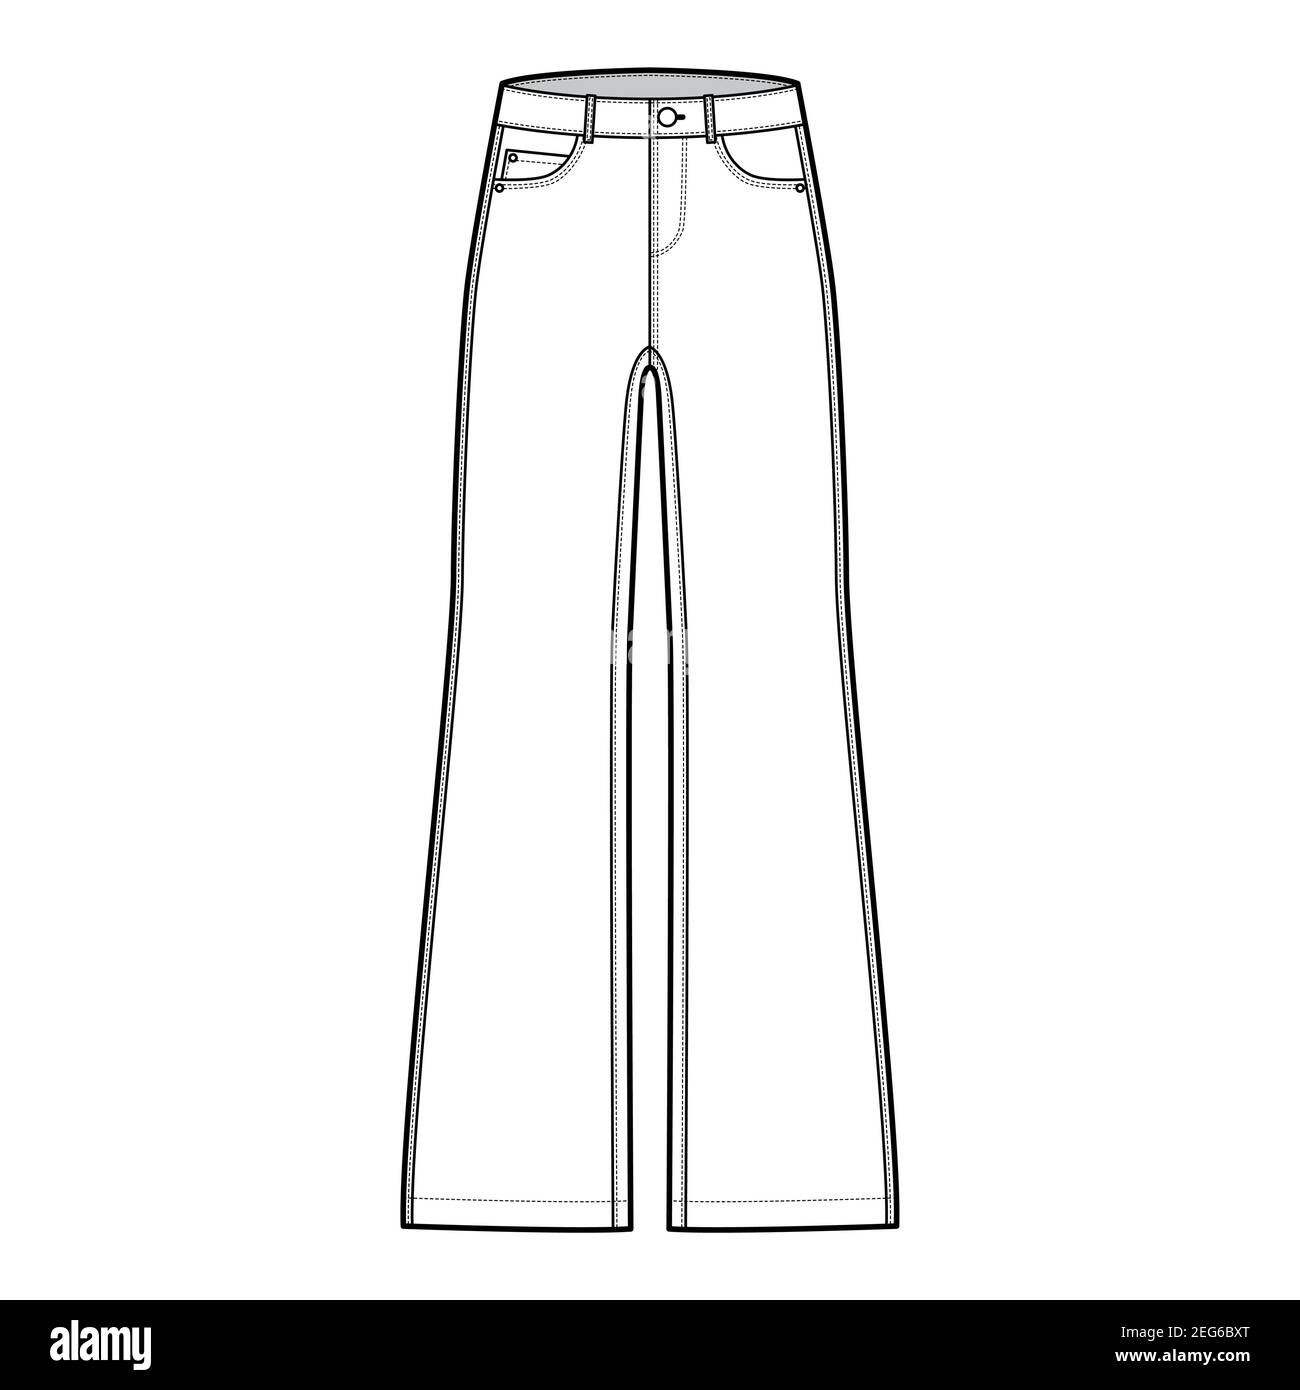 Ensemble de jeans pantalon denim coupe large illustration technique de la mode avec toute la longueur, taille basse, taille, 5 poches, passants de ceinture. Modèle avant à fond plat, couleur blanche. Femmes, hommes, maquette de CAD unisex Illustration de Vecteur